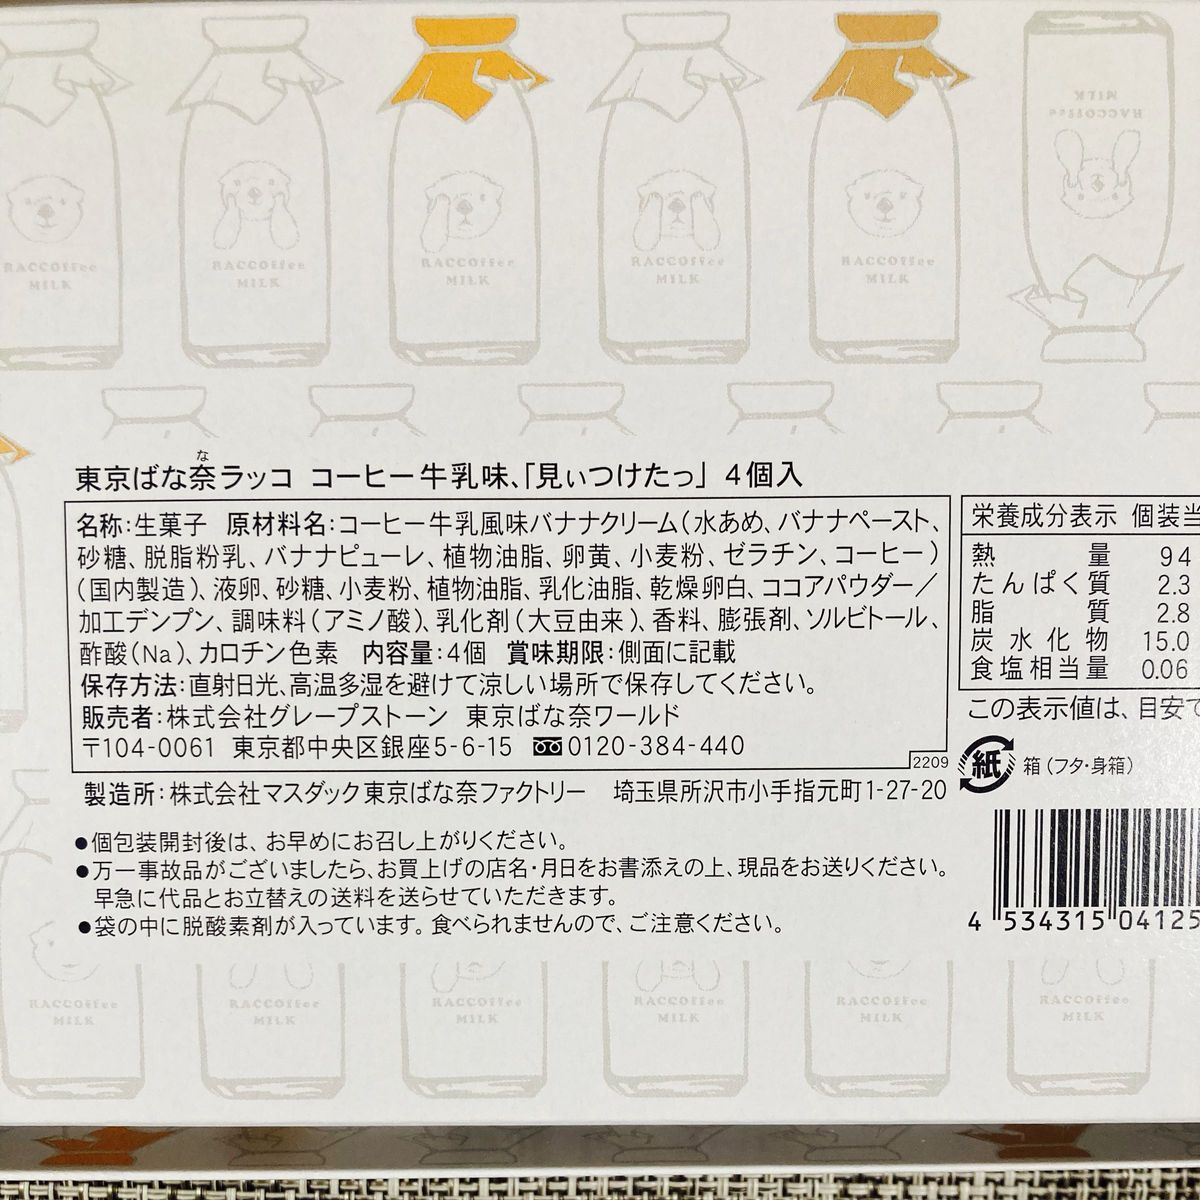 【東京限定】東京ばな奈 ラッコ プレーン 2箱セット 未開封発送